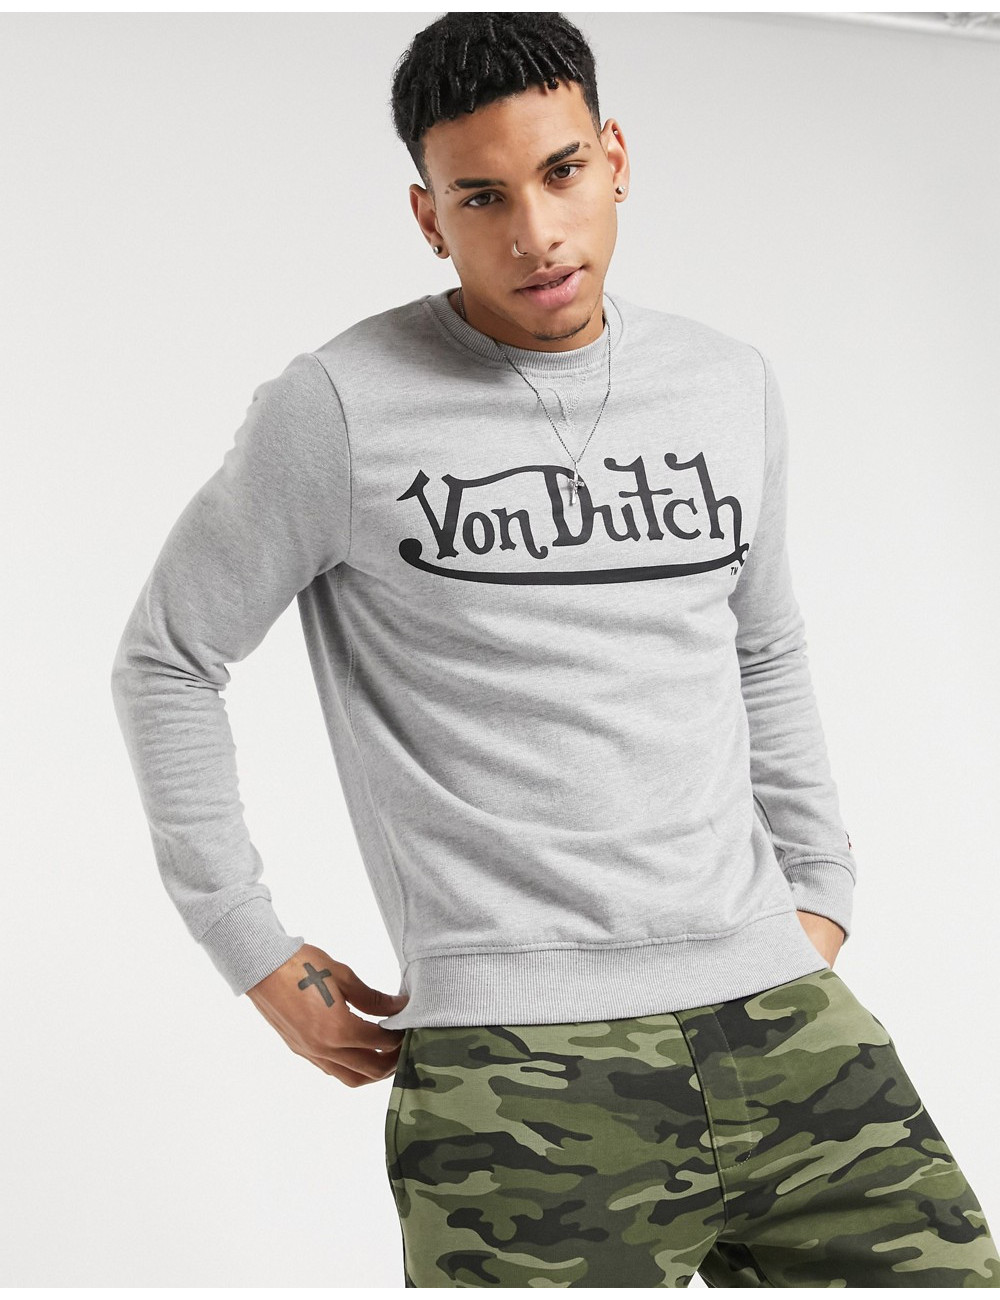 Von Dutch crew sweatshirt...